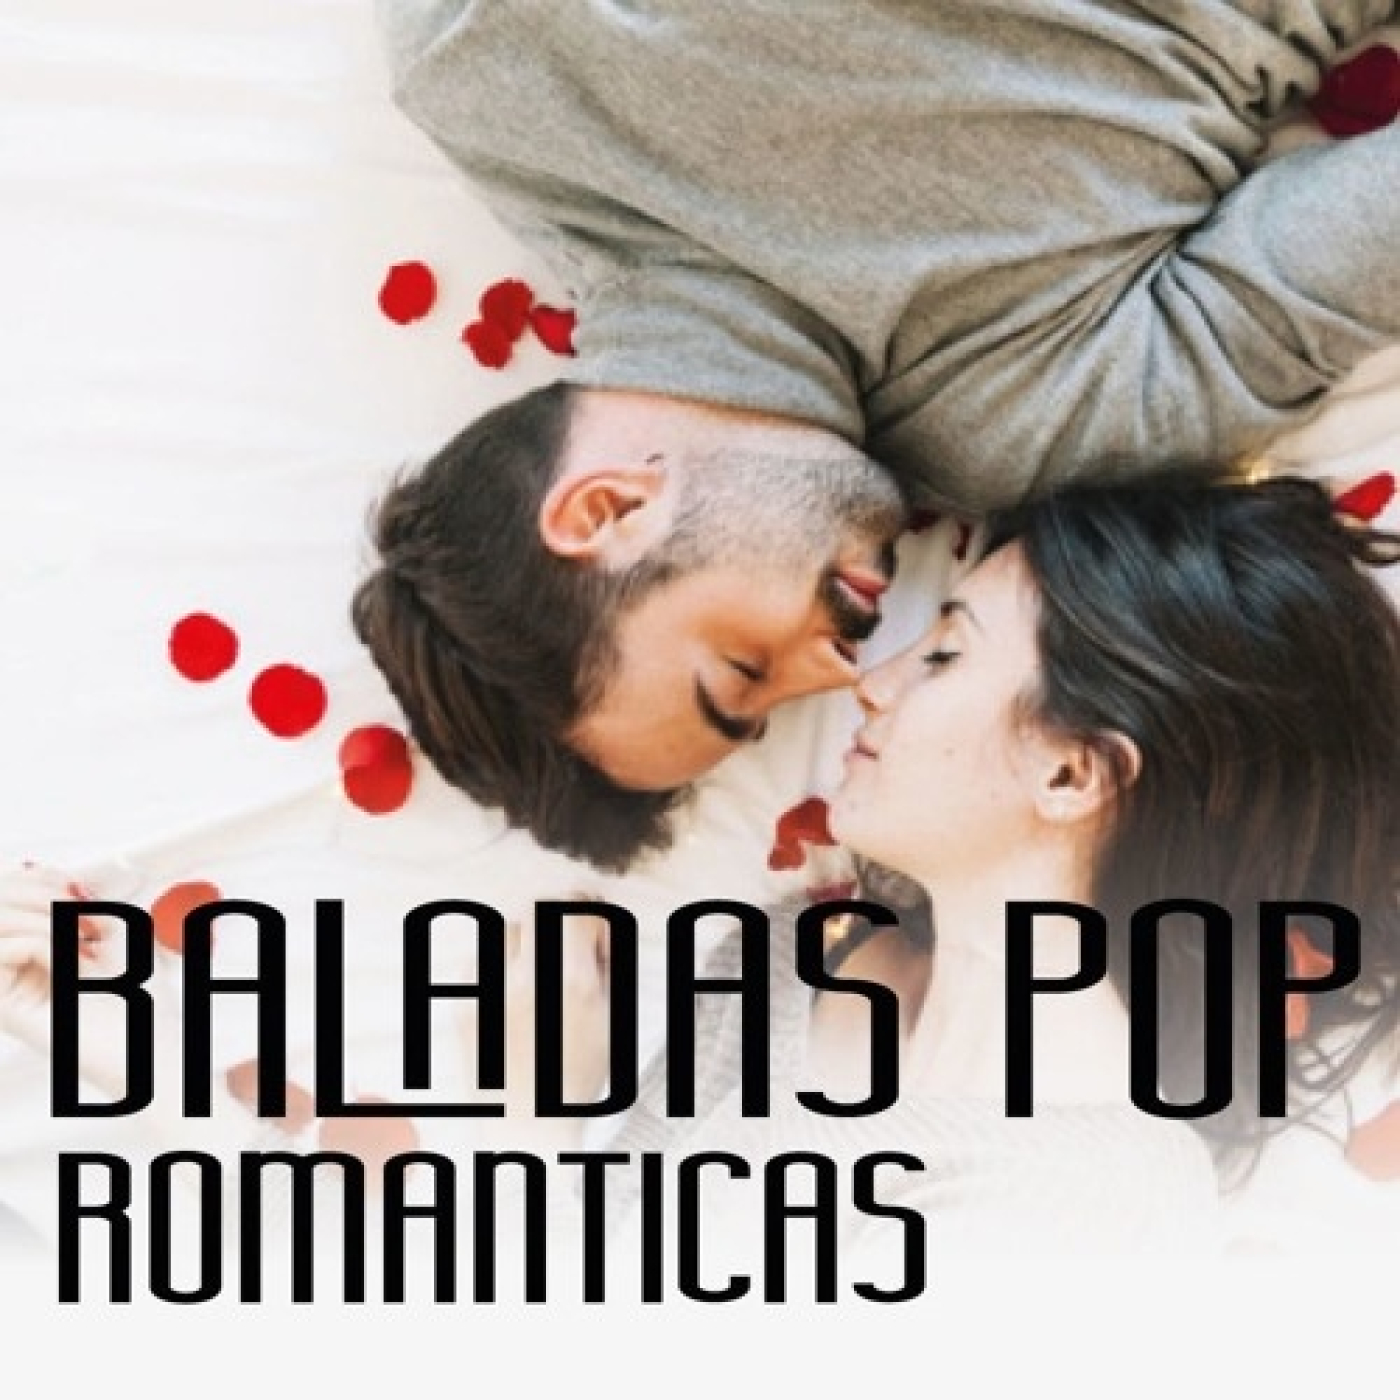 Baladas Pop